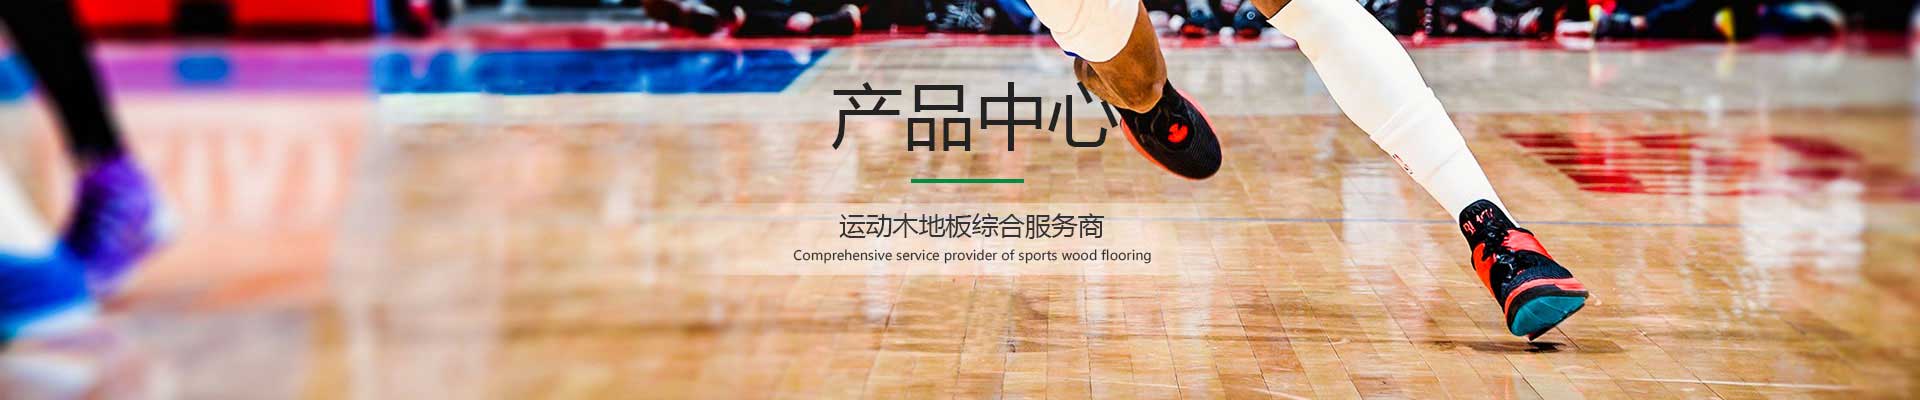 体育运动木地板产品中心